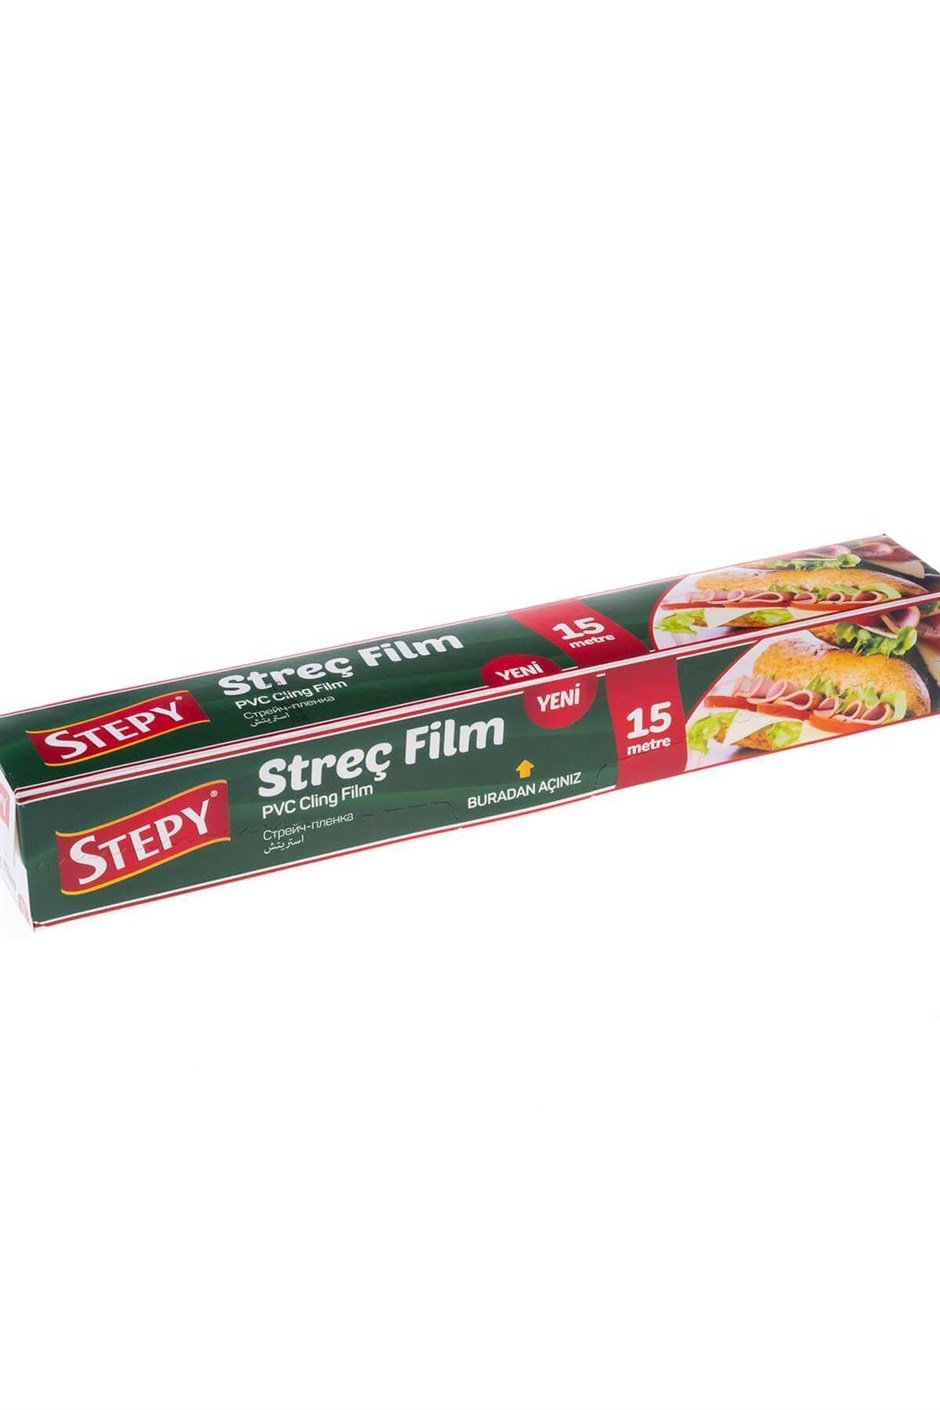 Stepy Streç Film 15 metre